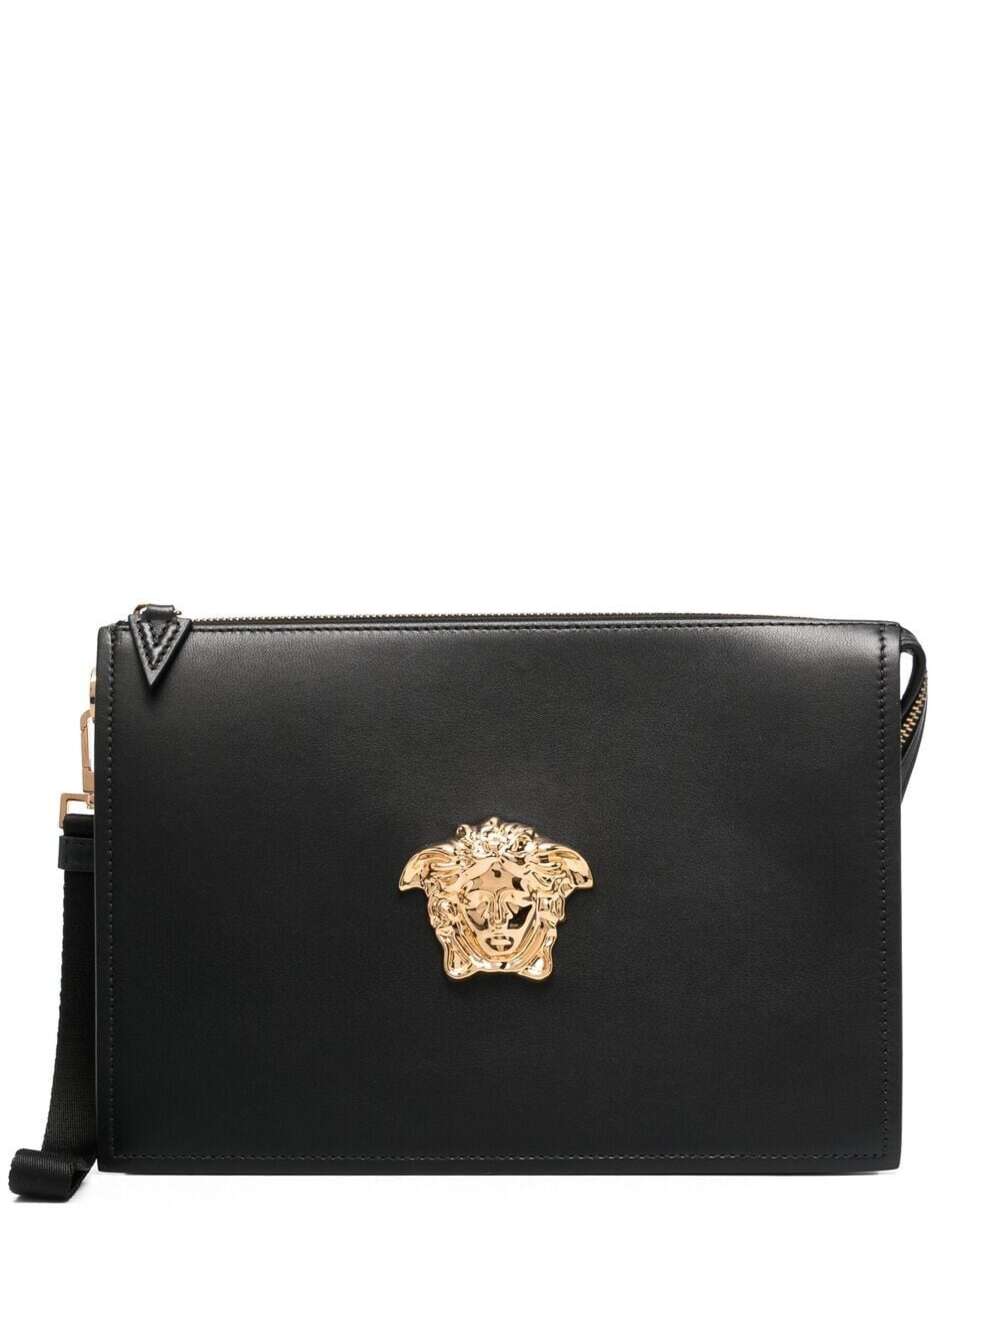 Versace Black Leather Handbag With Golden Metal Medusa Detail